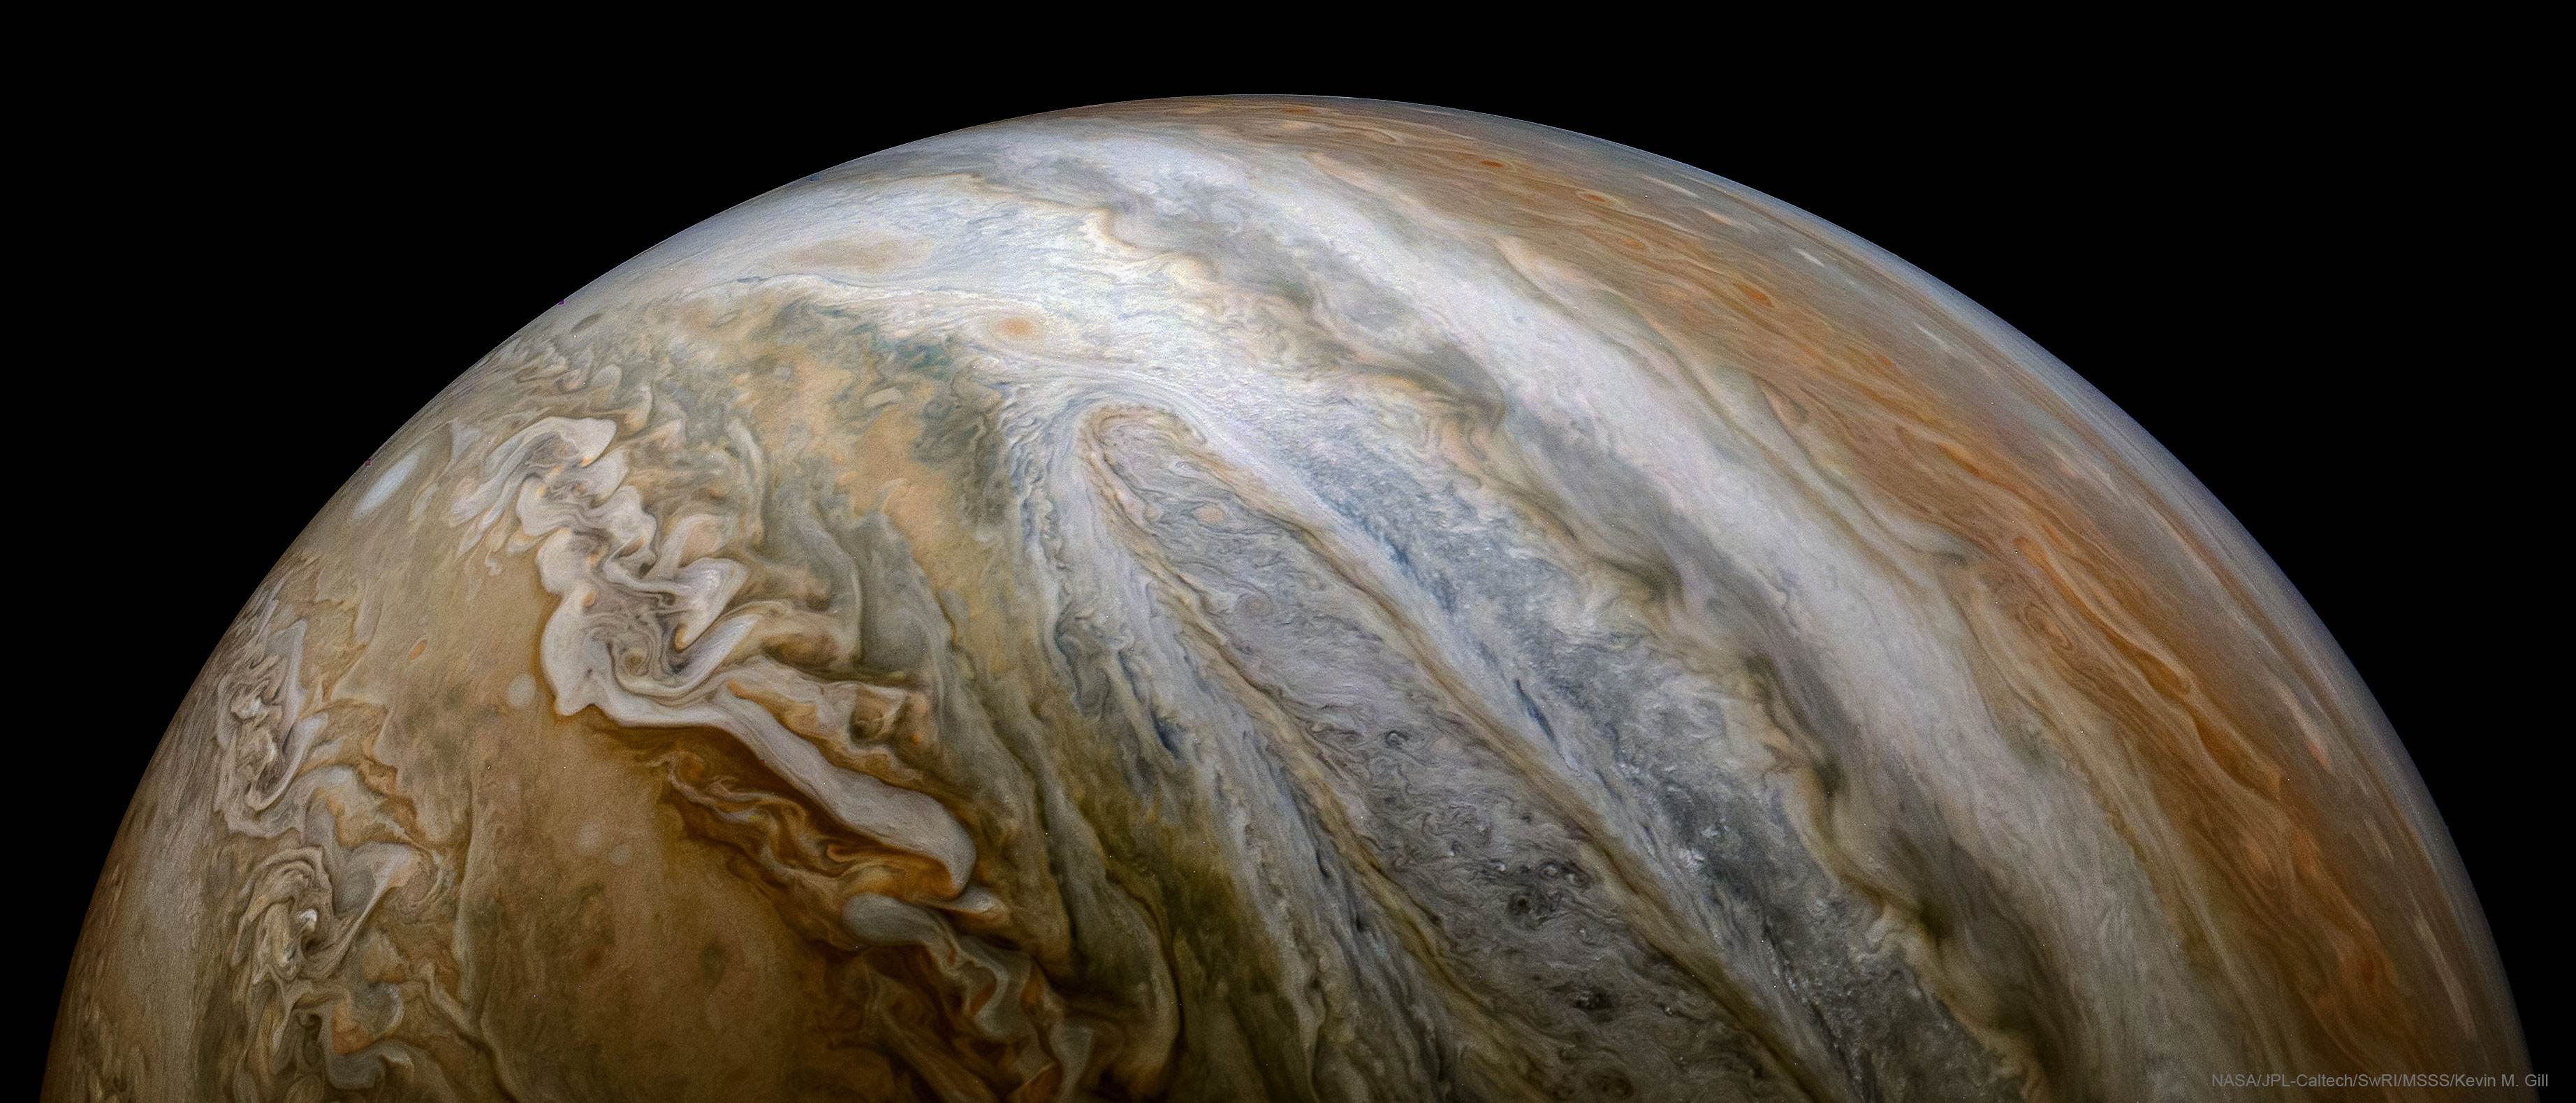 木星有多可怕?内部环境相当恐怖,仅仅一个风暴就能放下3个地球